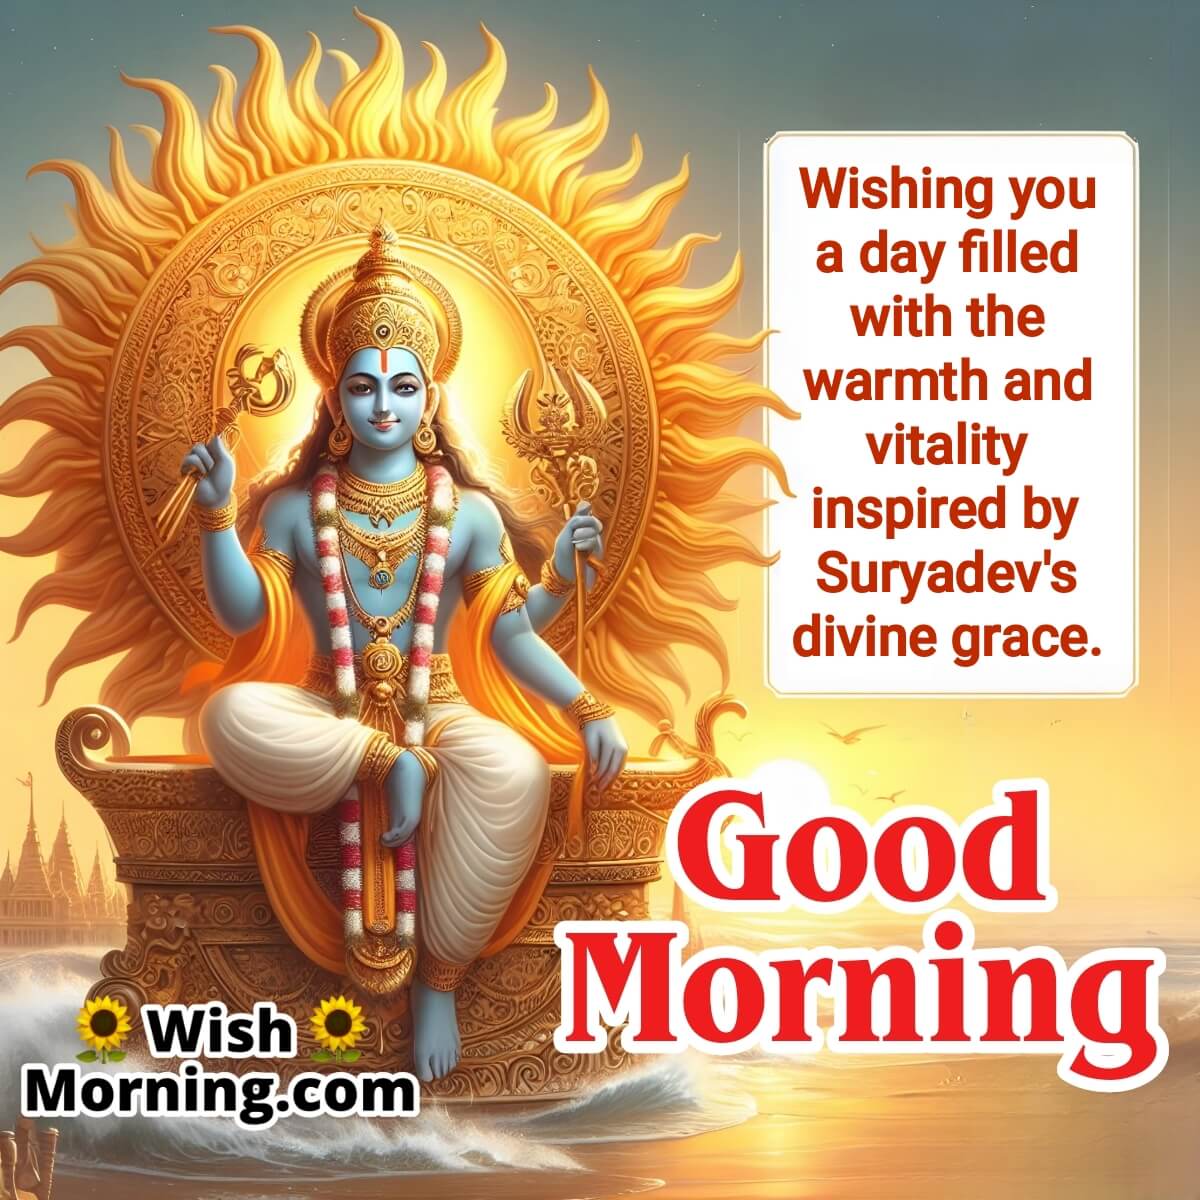 Good Morning Suryadev Images - Wish Morning